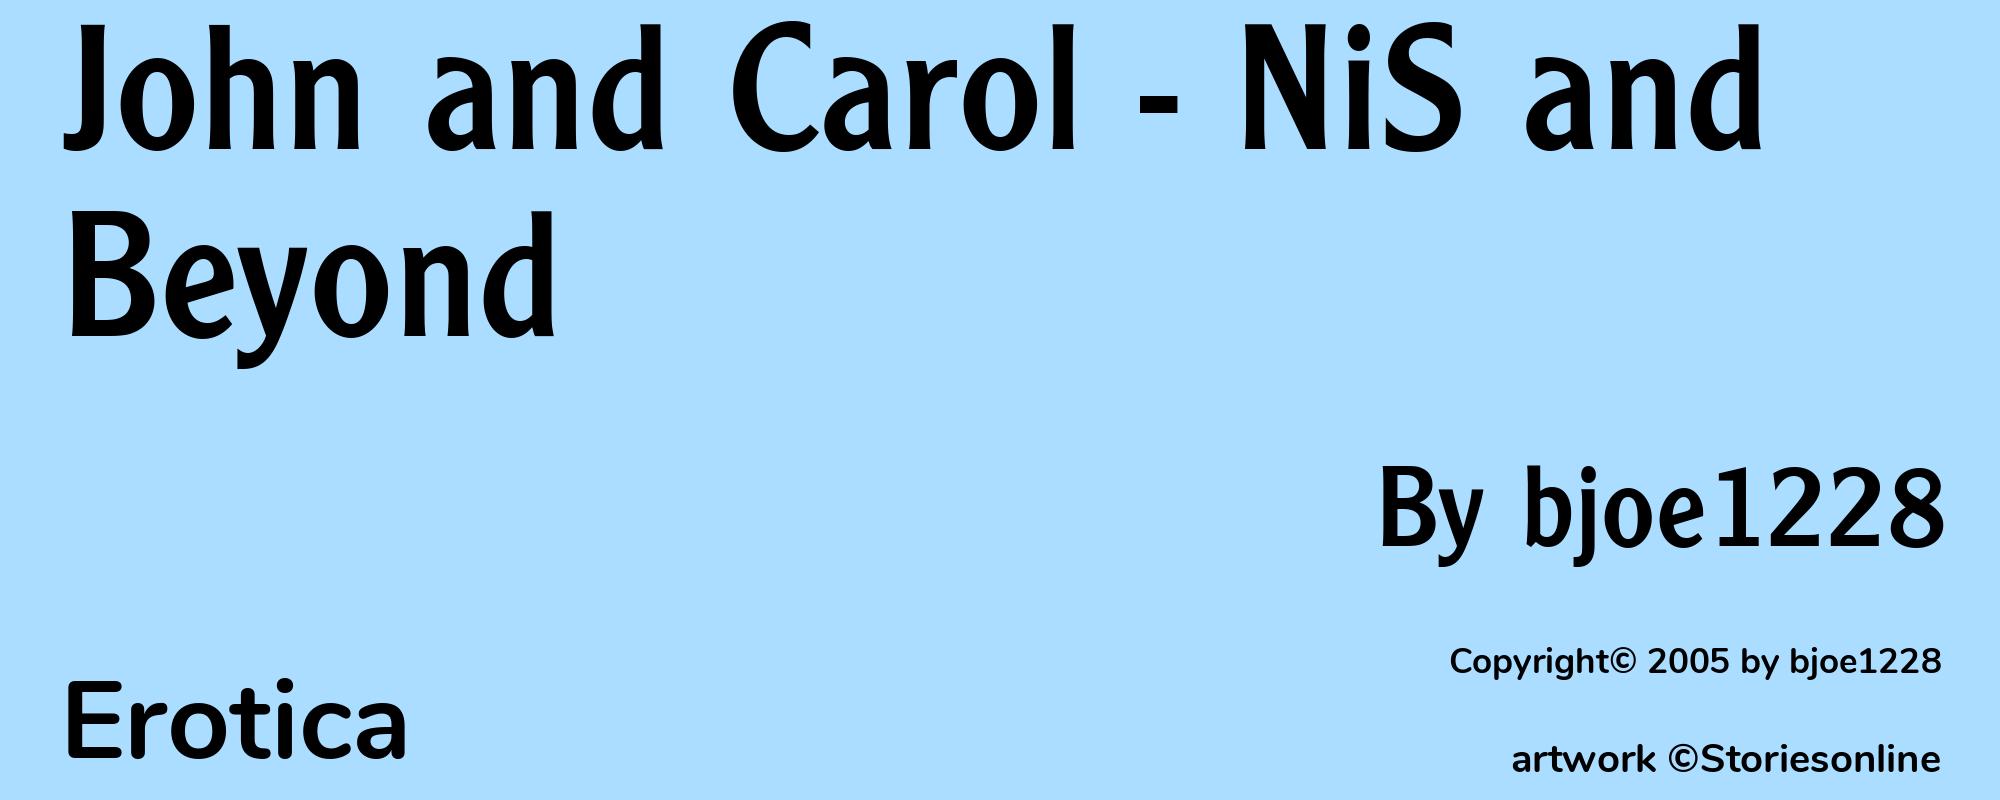 John and Carol - NiS and Beyond - Cover